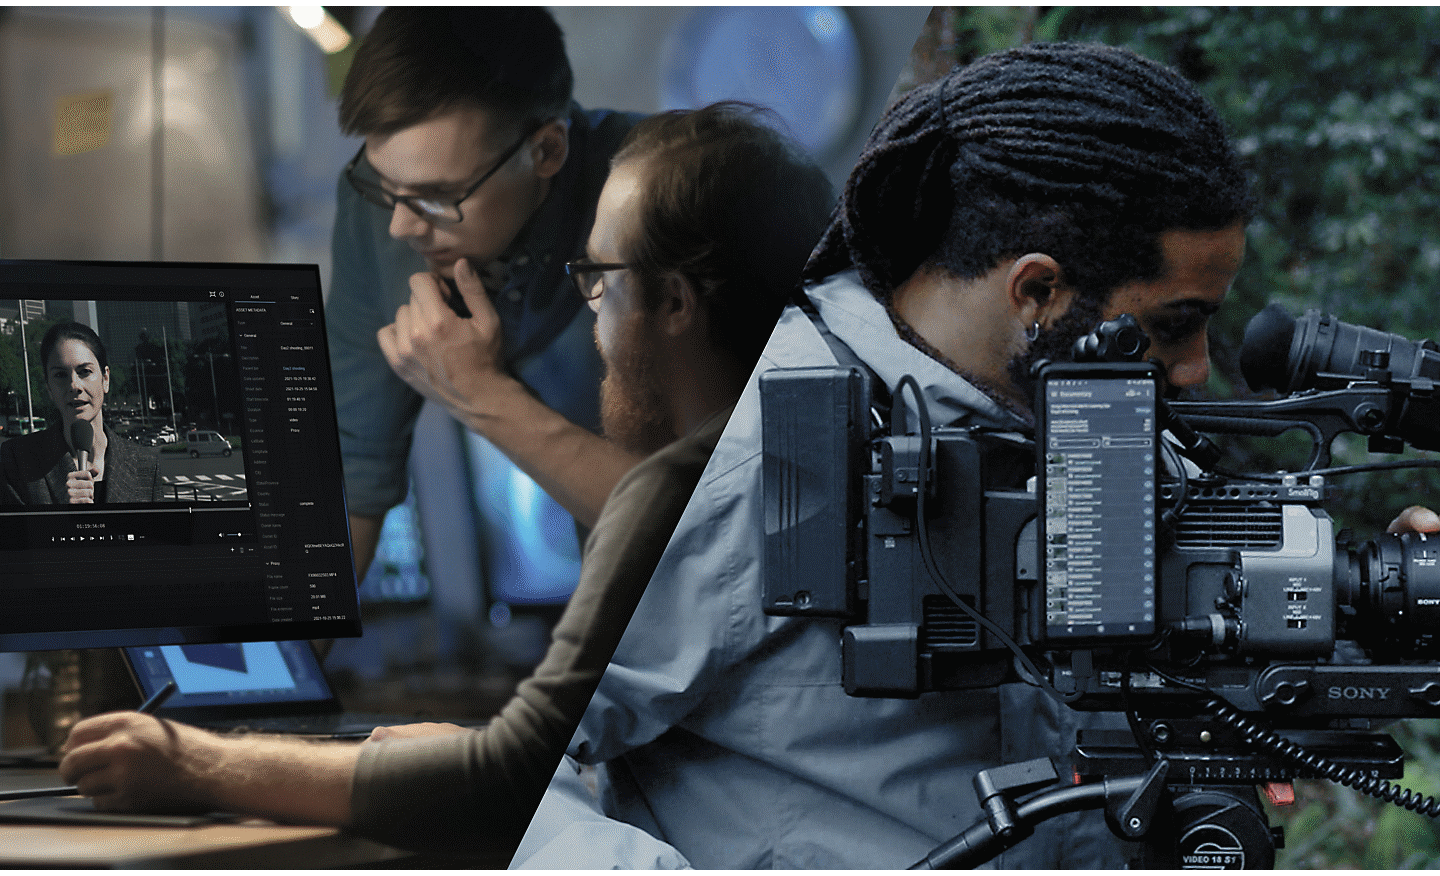 Un equipo de filmación de tres hombres está de pie en un área boscosa, mientras un hombre en el centro de la imagen ajusta una cámara de cine Sony que está conectada a la nube a través de un smartphone Xperia.